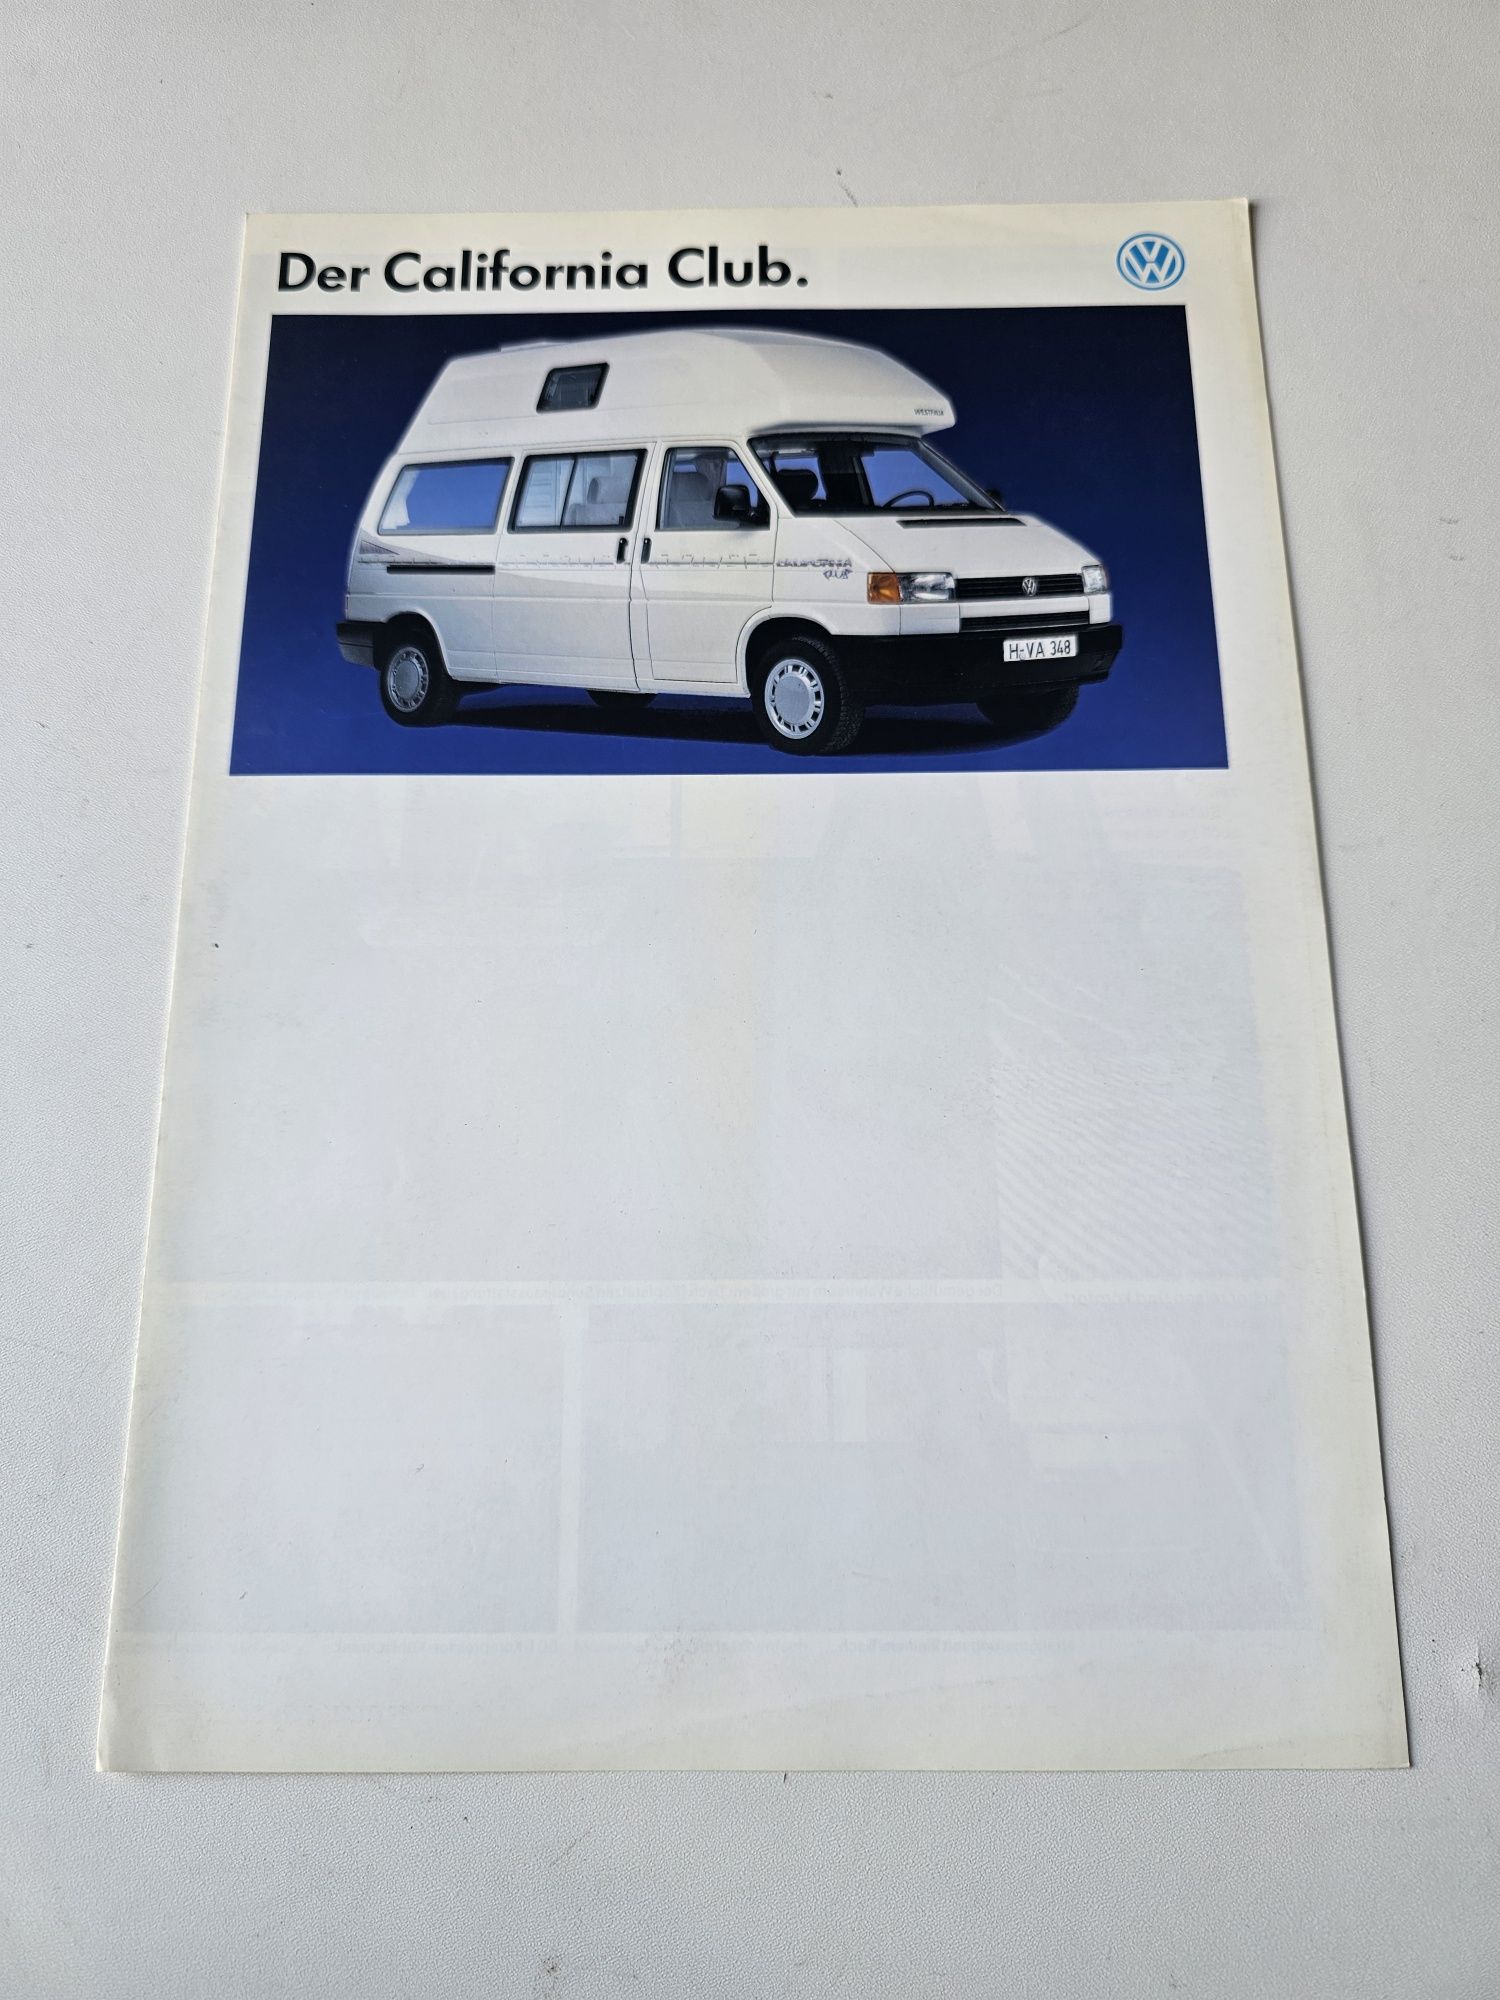 Brosura de prezentare originala Volkswagen T4 California Club

Stare b